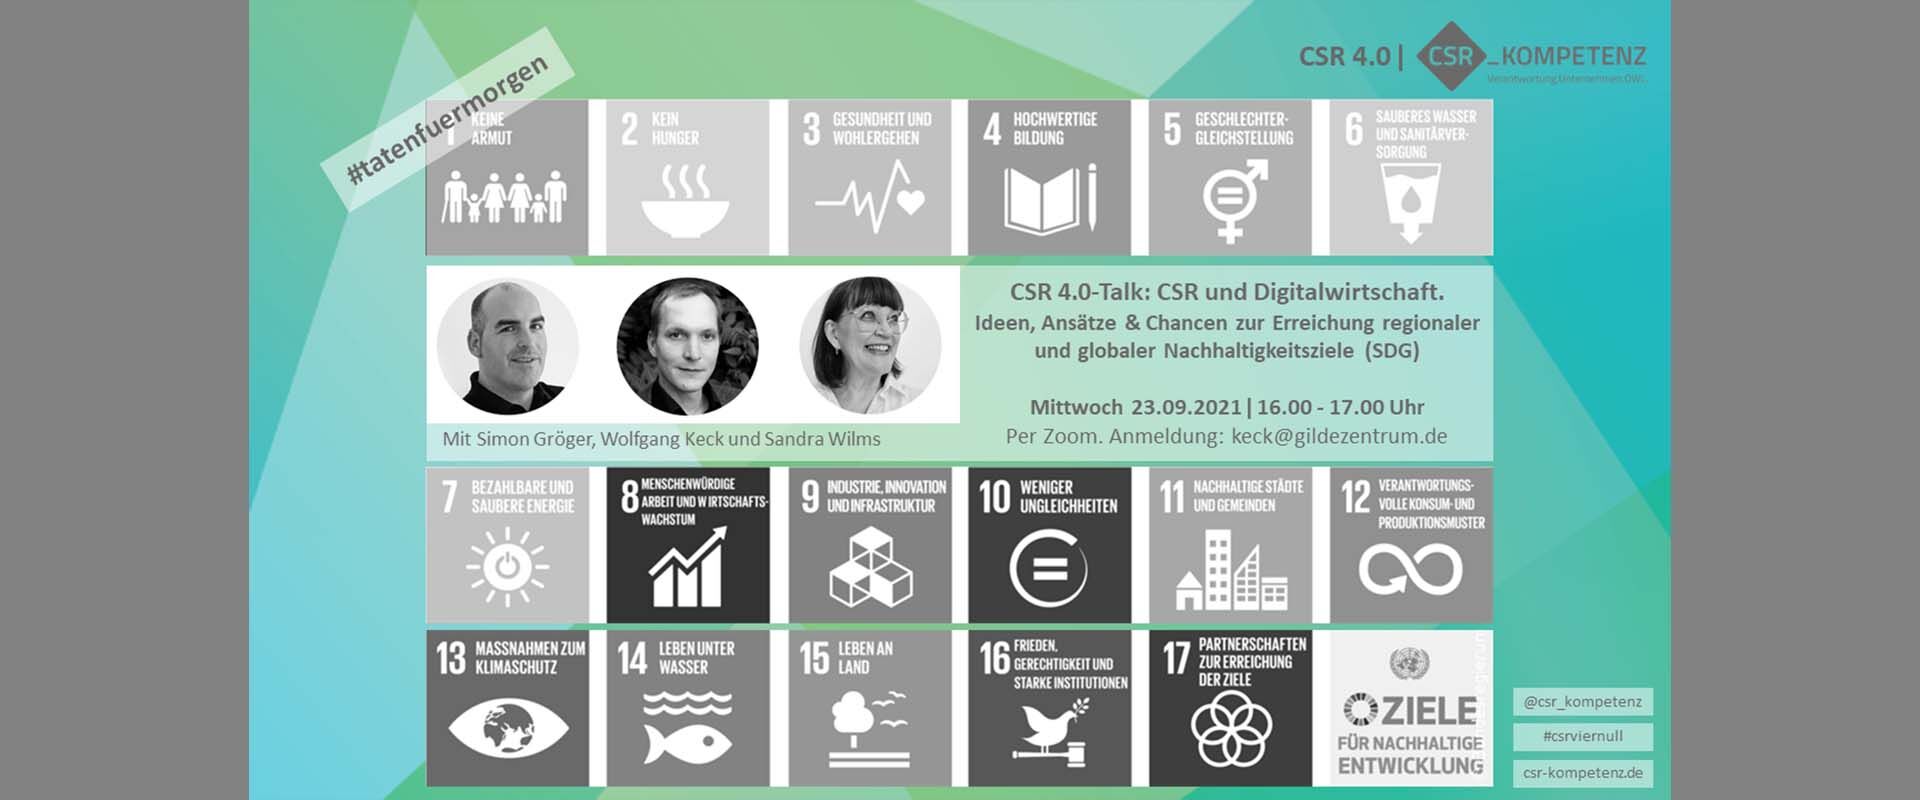 Einladung zum CSR 4.0-Talk - CSR und Digitalwirtschaft. Ideen, Ansätze & Chancen der Digitalwirtschaft zur Erreichung regionaler und globaler Nachhaltigkeitsziele (SDG) am 23.09.21 ǀ 16-17 Uhr